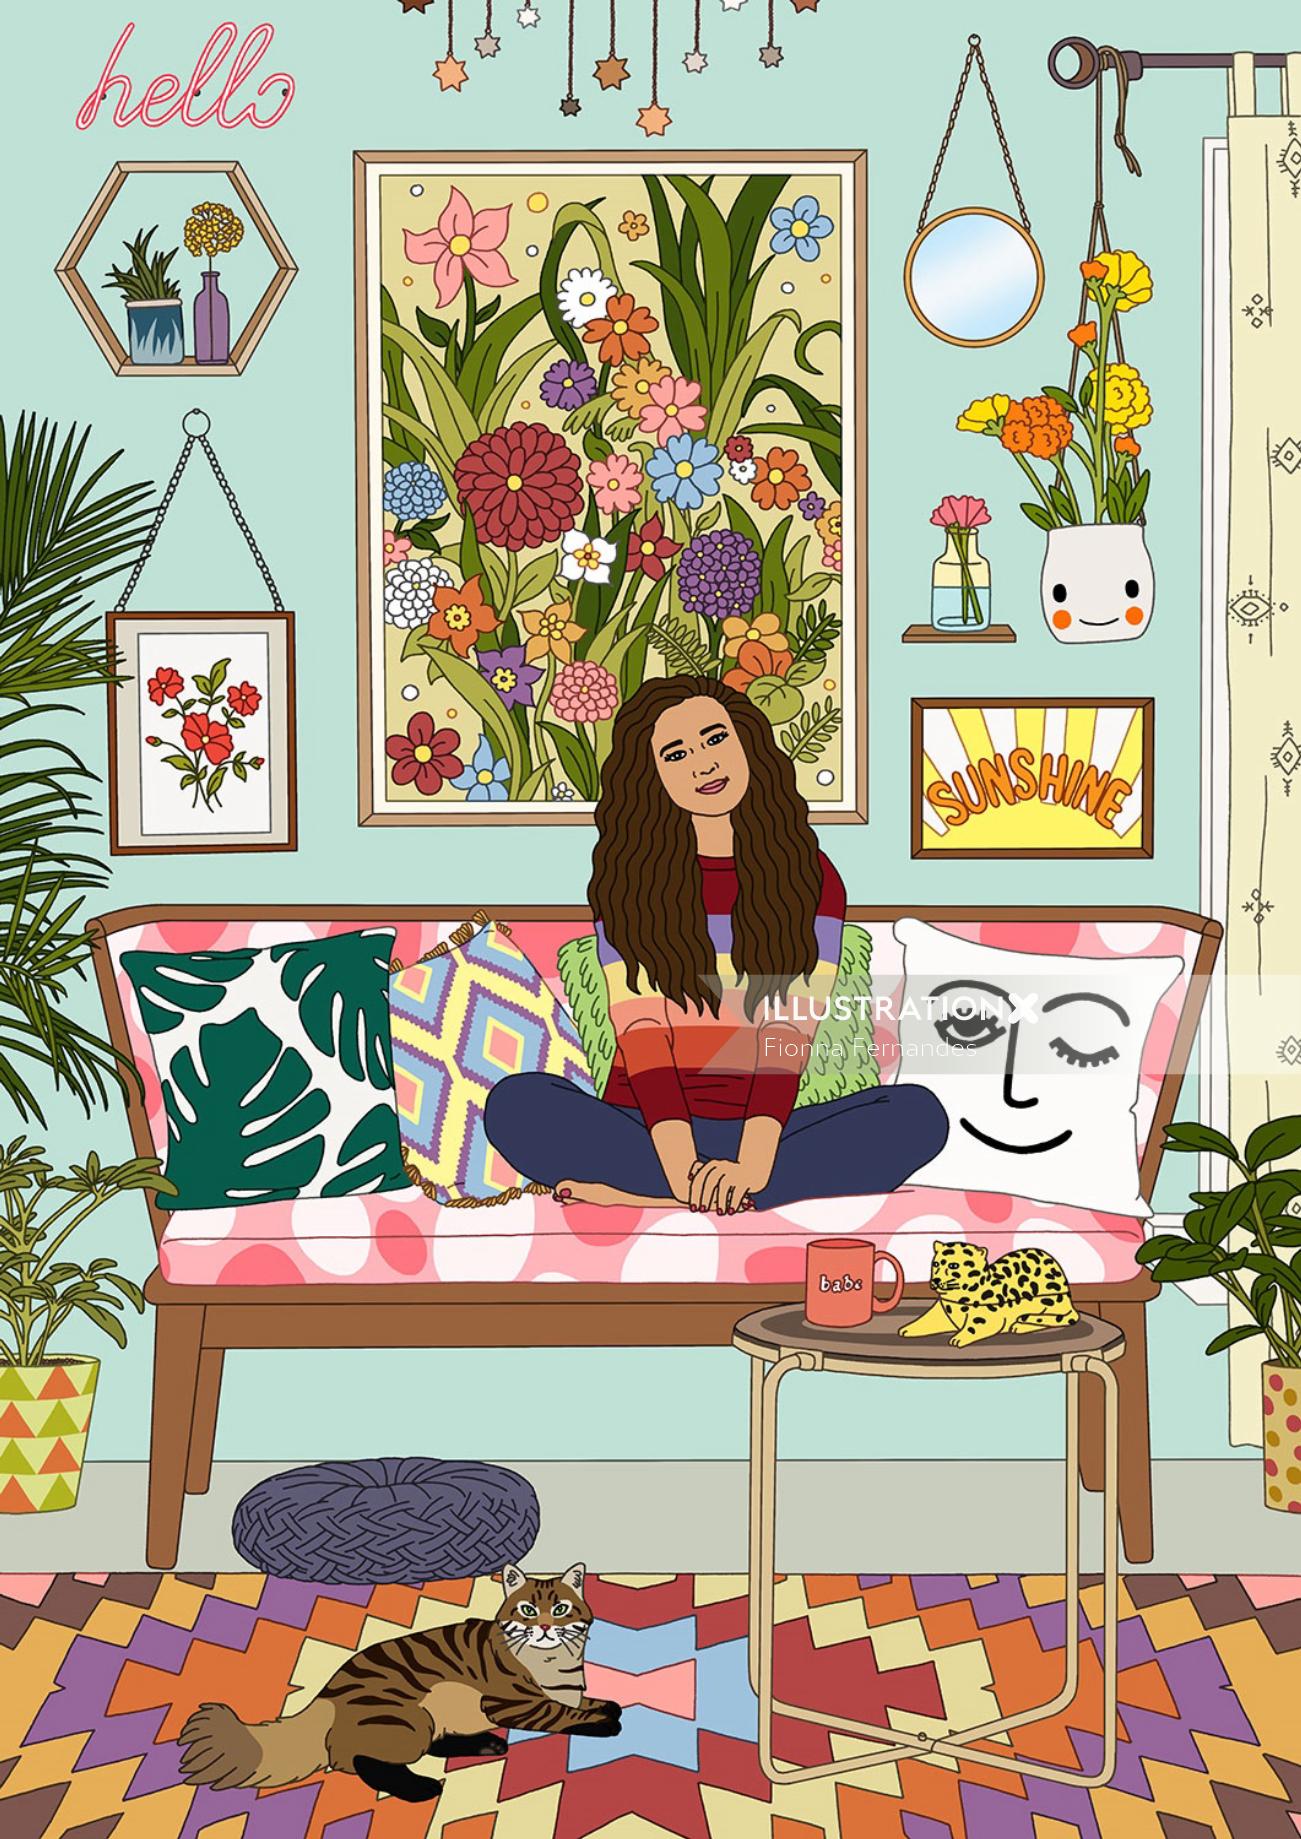 Uma ilustração da mulher relaxando em um sofá